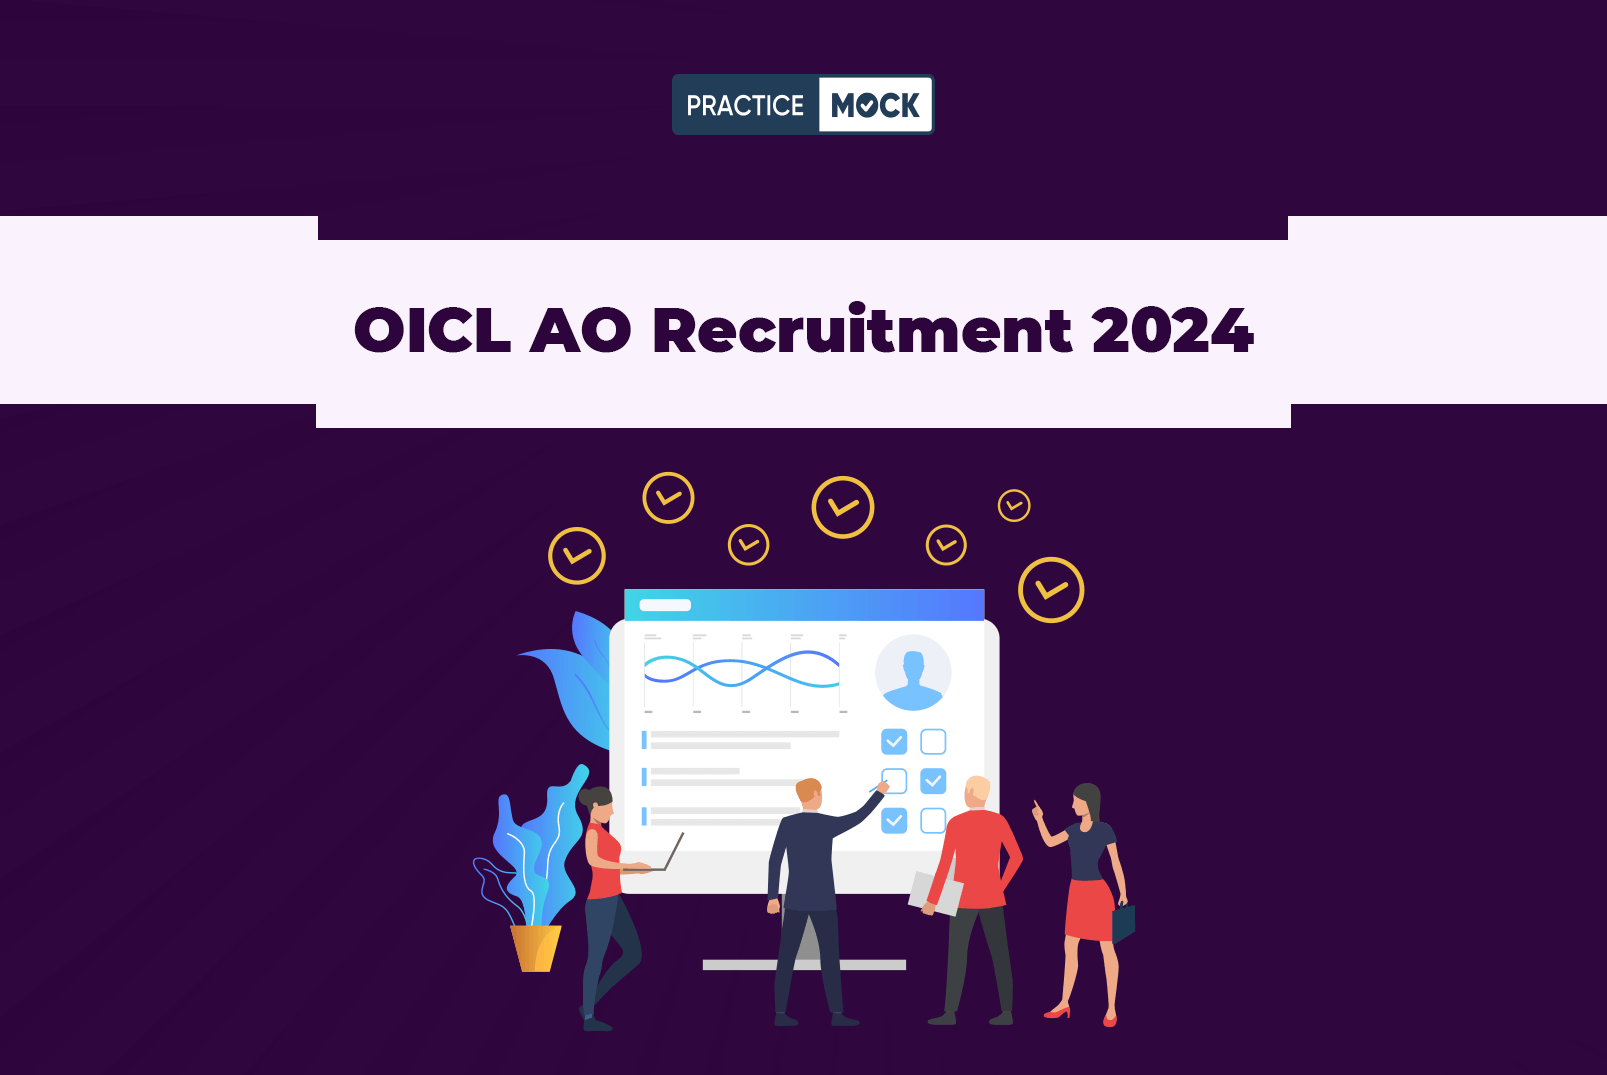 OICL AO Recruitment 2024